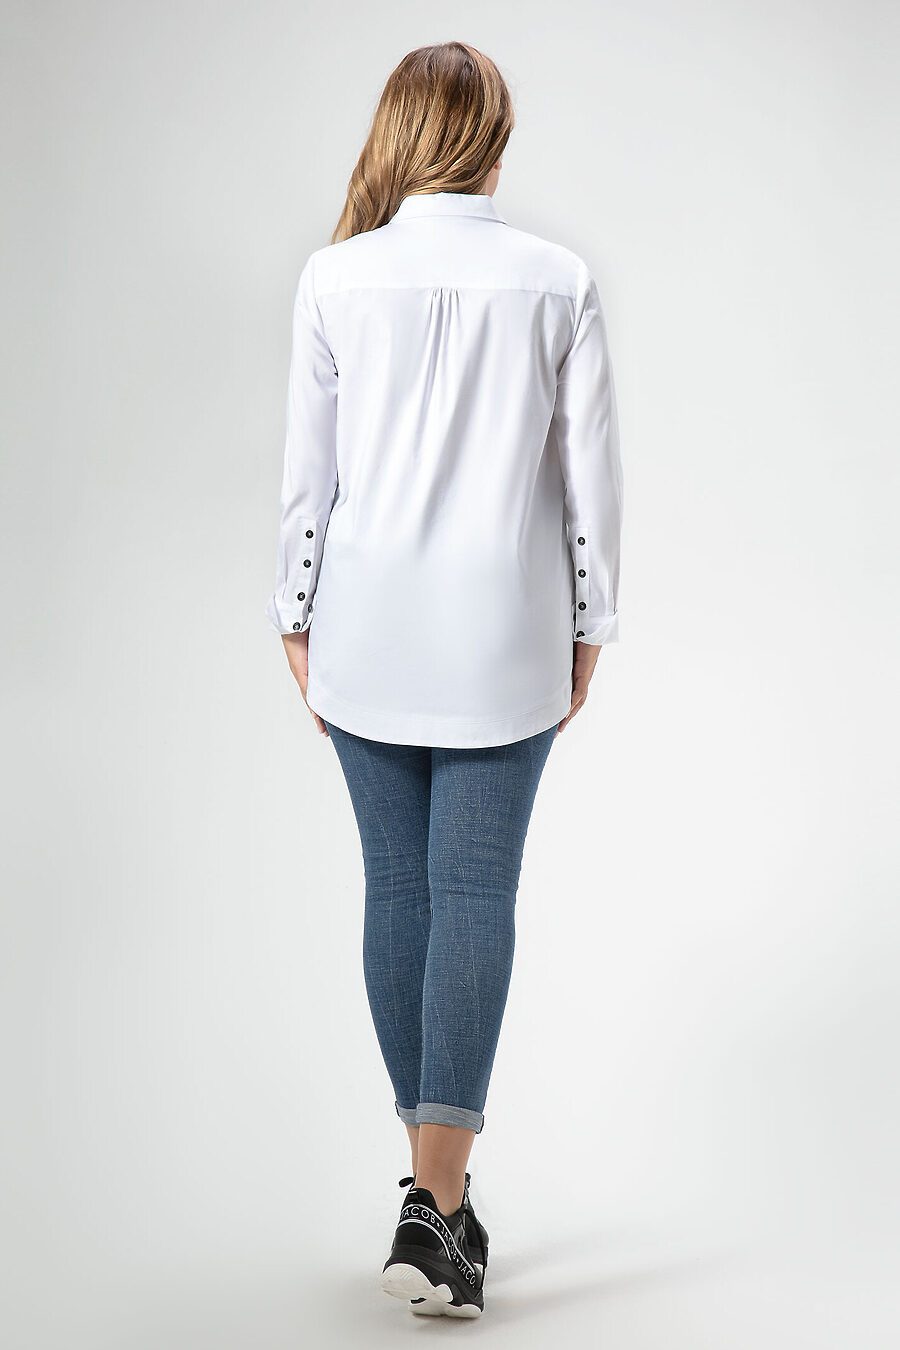 Блуза для женщин PANDA 665760 купить оптом от производителя. Совместная покупка женской одежды в OptMoyo